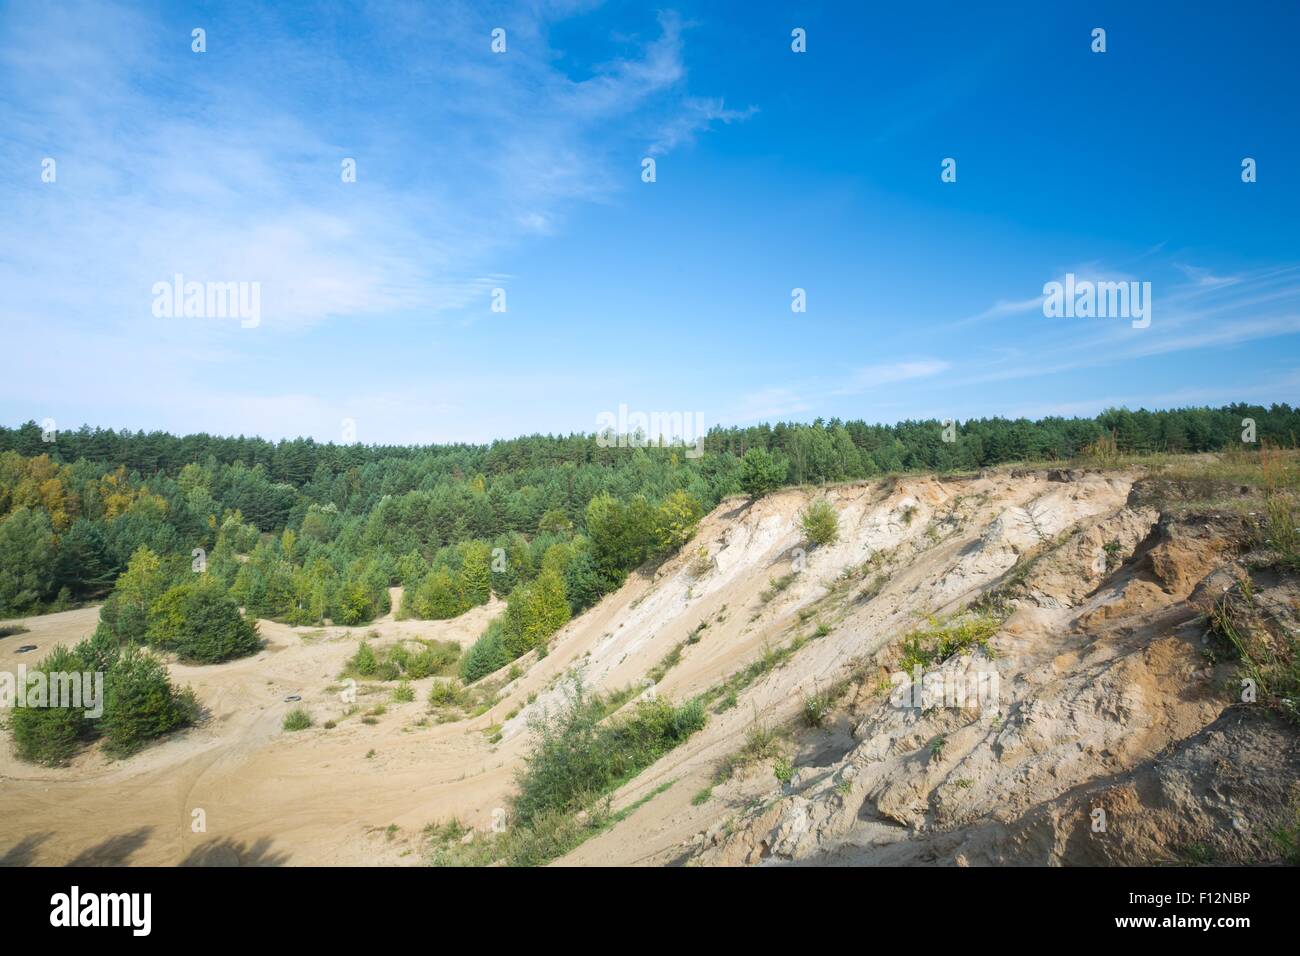 Sandhills und Pine Forest unter blauem Himmel. Landschaft im ländlichen Raum Stockfoto